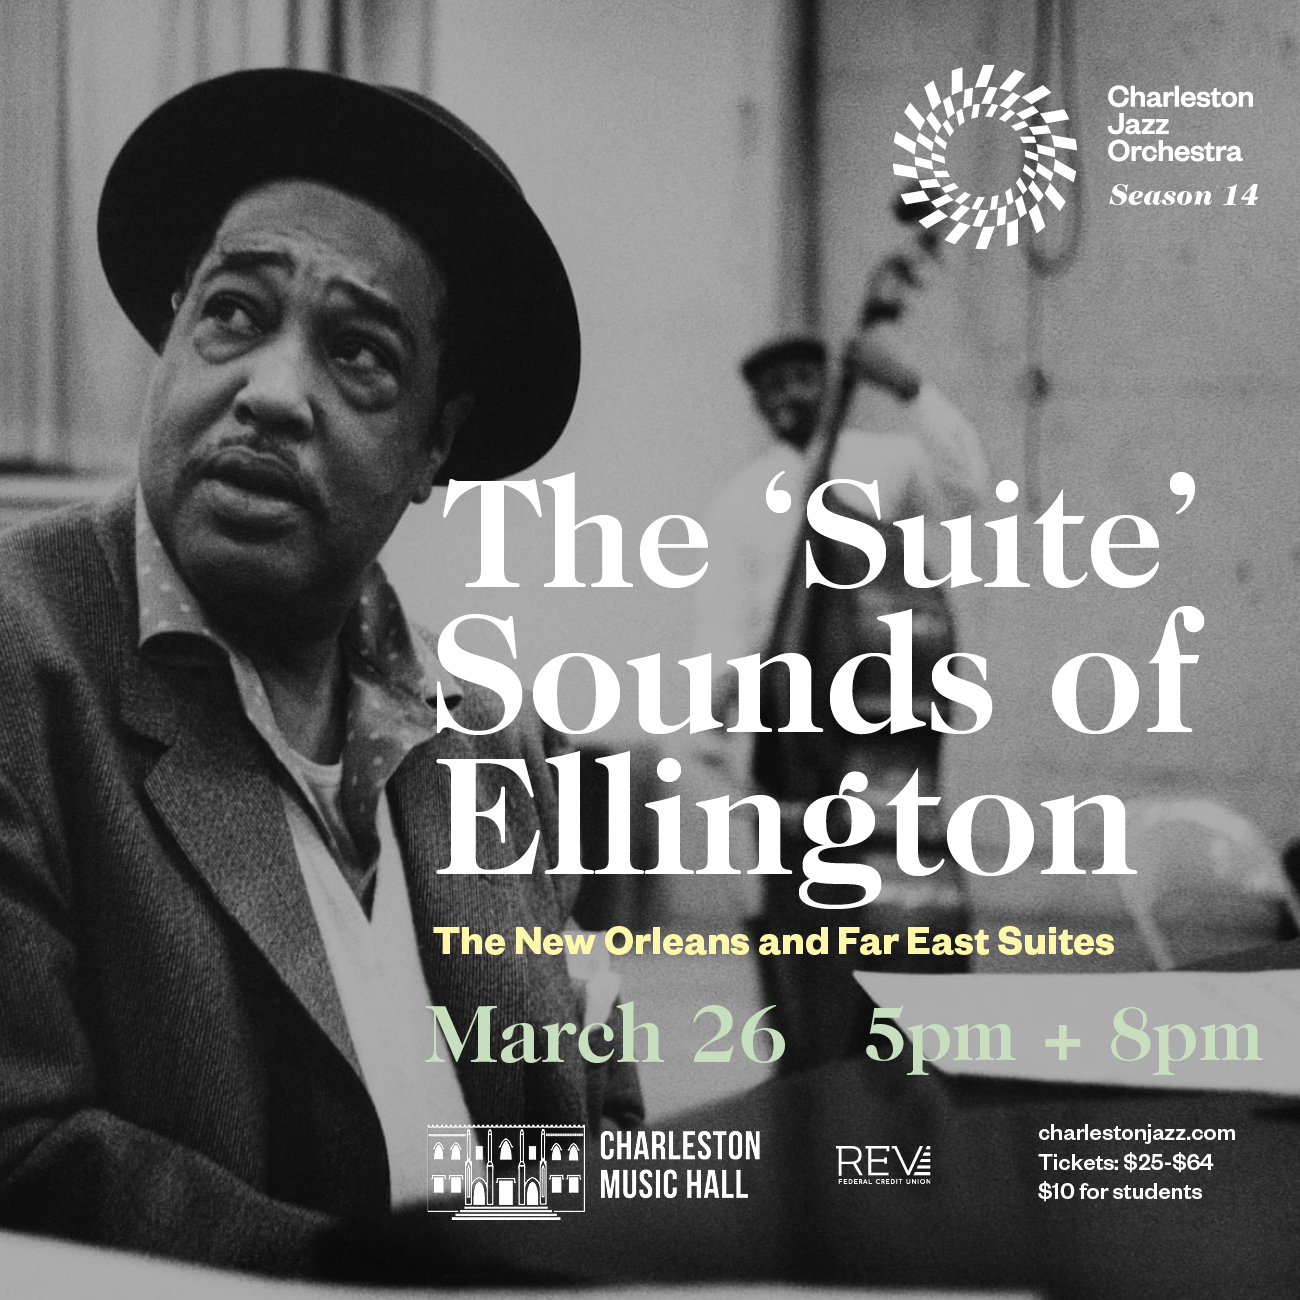 March 26, 2022 - The 'Suite' Sounds of Ellington